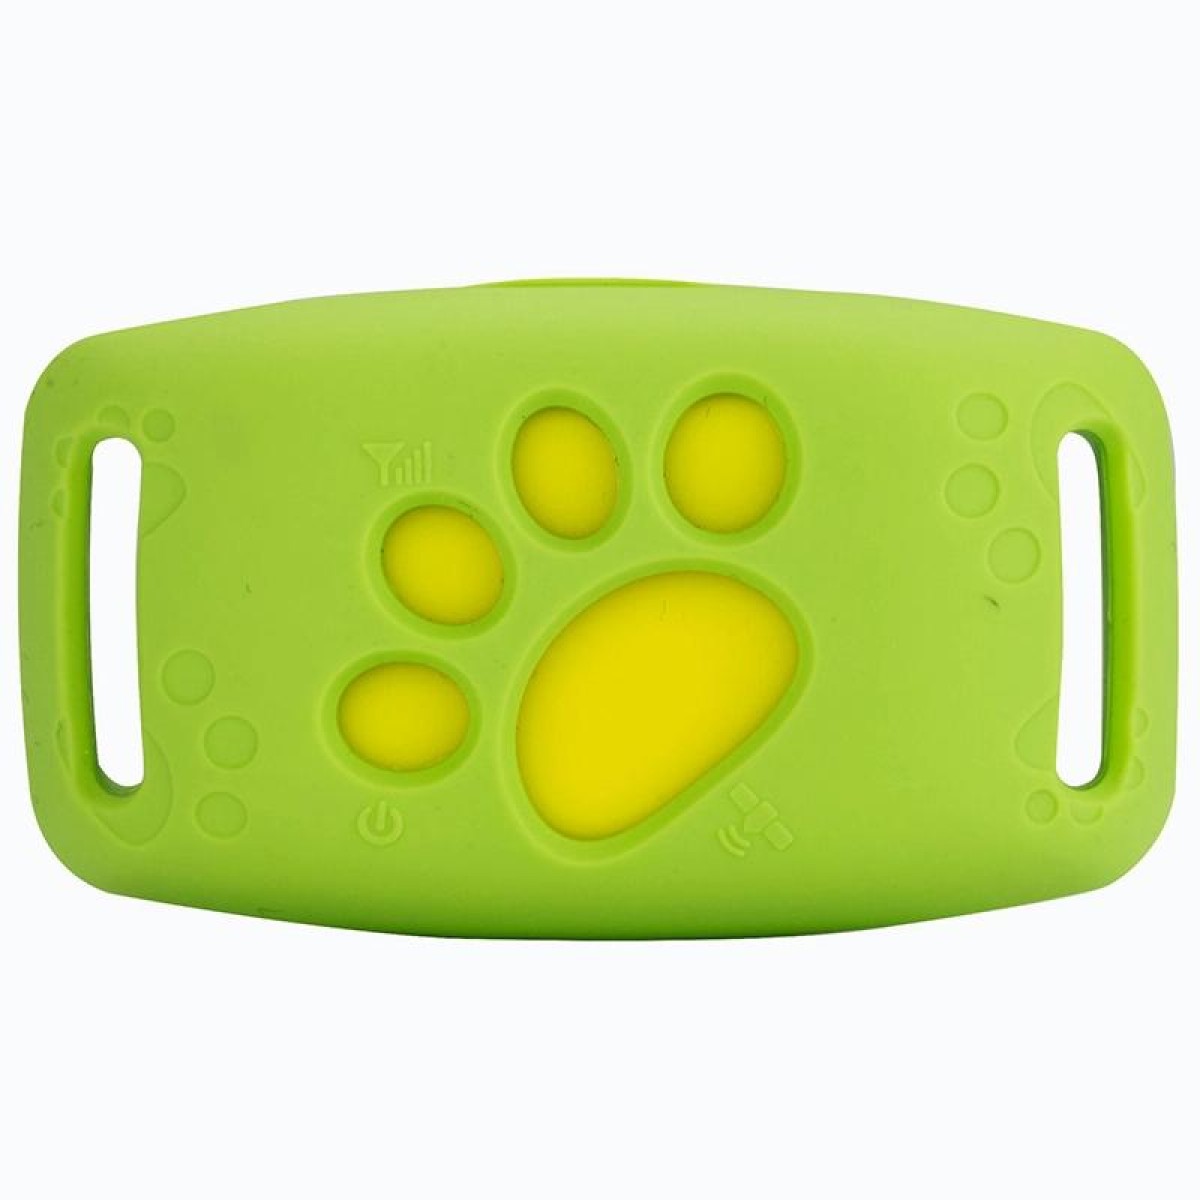 Z8-A Mini Pet Smart Wear GPS Pet Locator Tracking Device(Green)